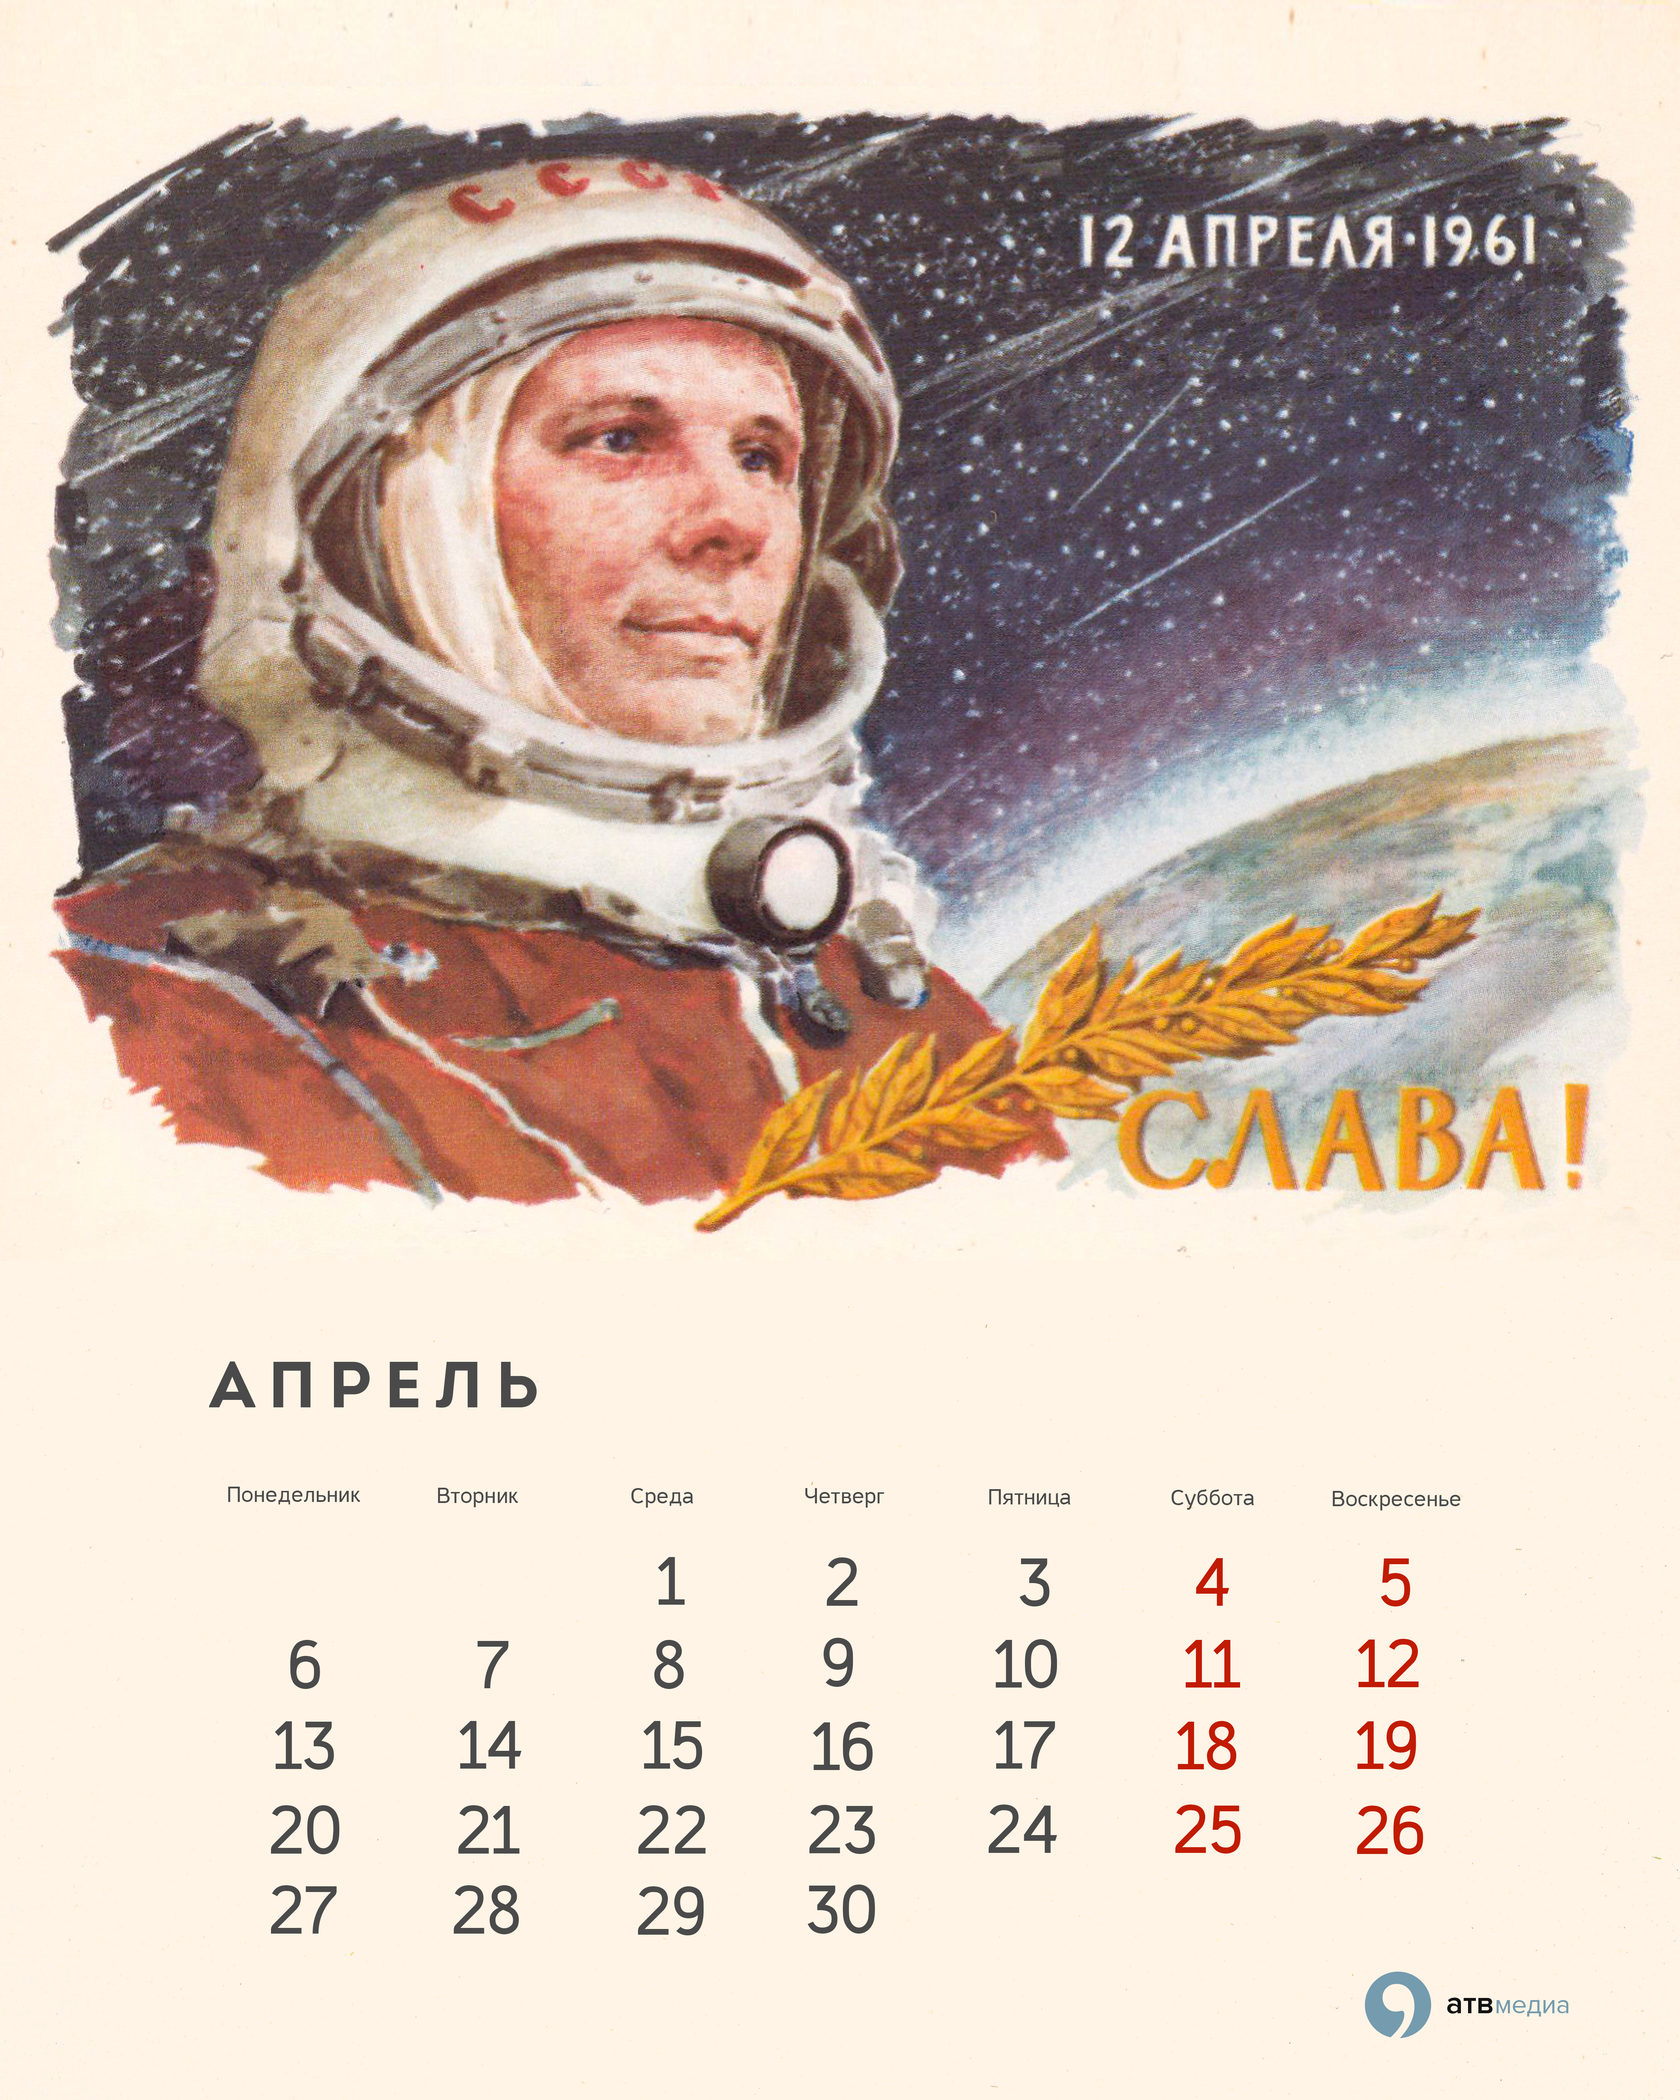 Календари, открытки